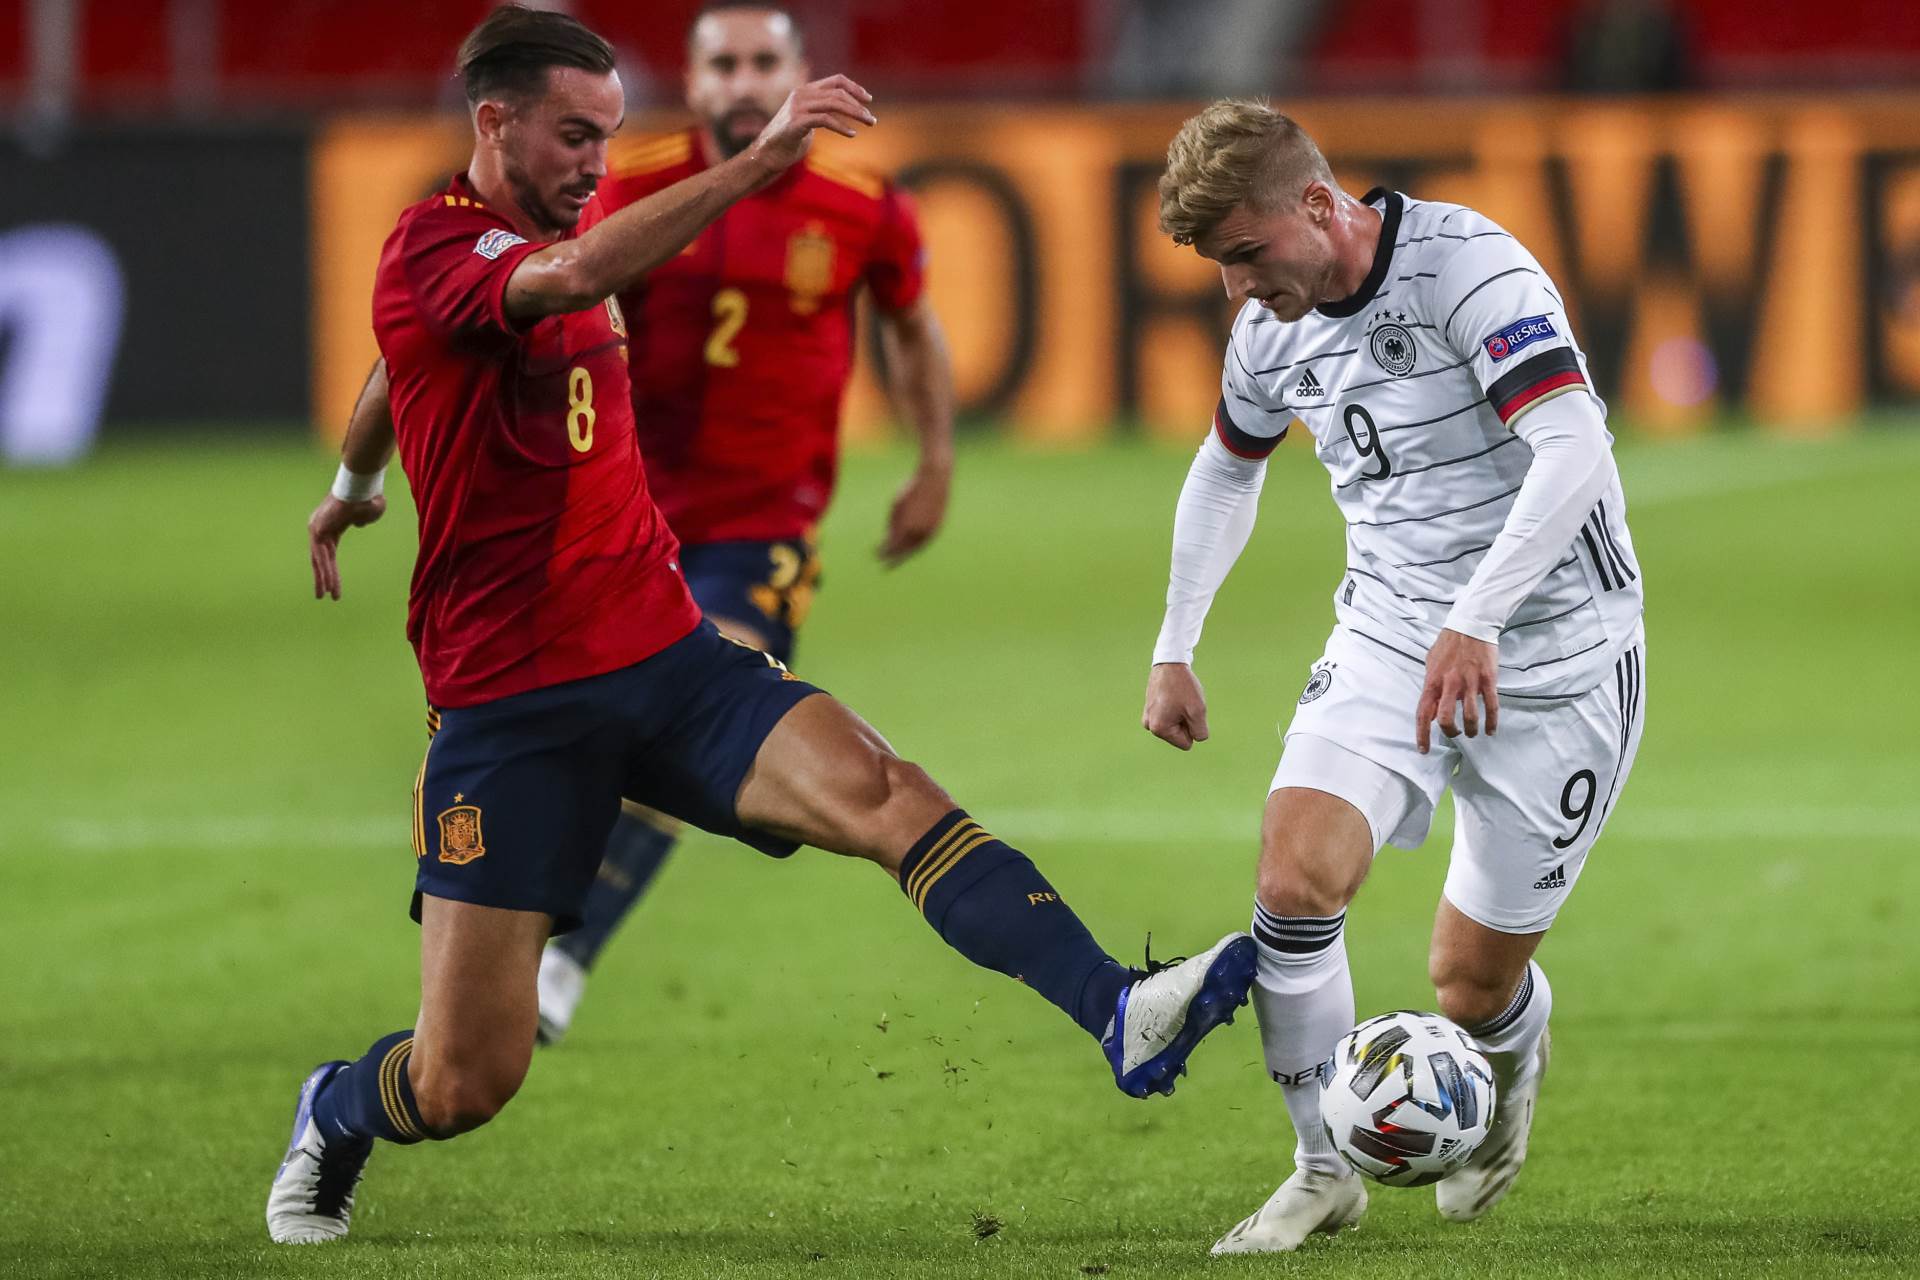  Njemačka - Španija 1:1 Liga nacija 